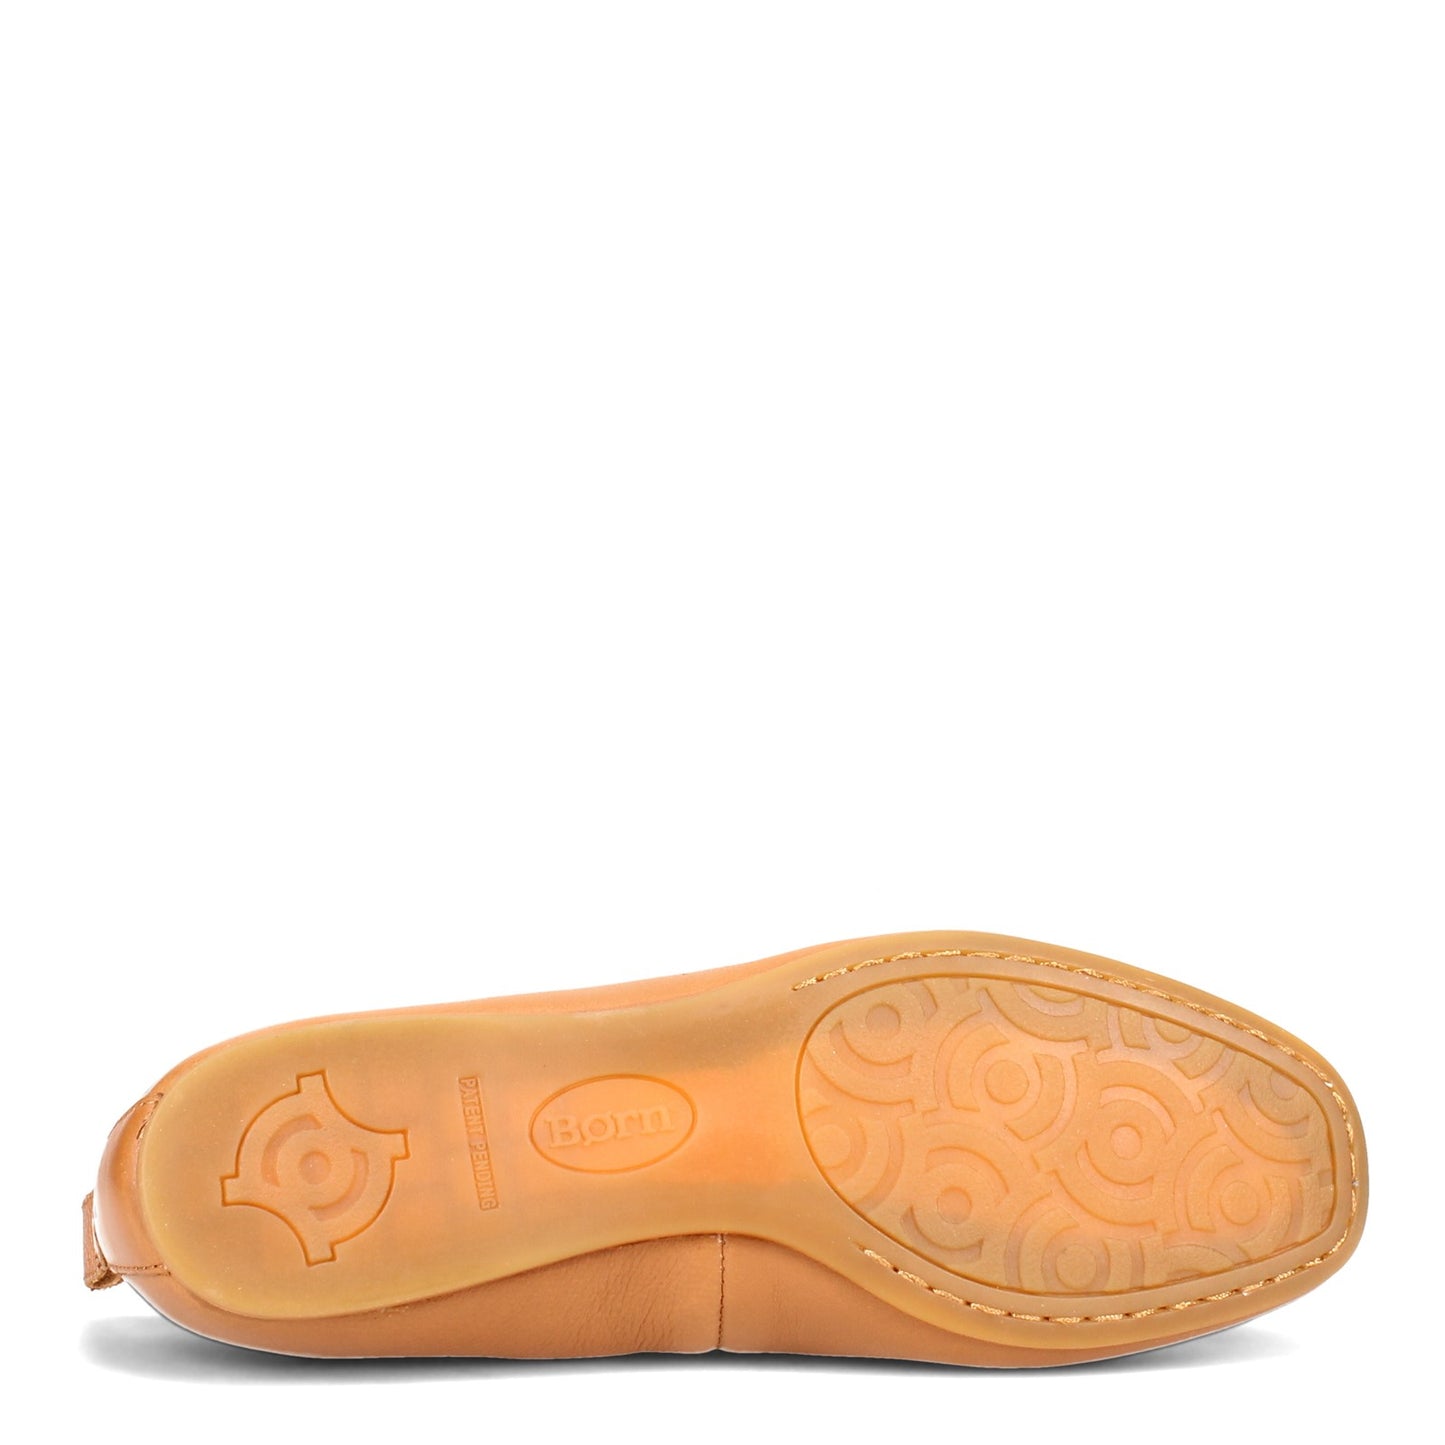 Peltz Shoes  Women's Born Beca Flat Tan BR0018616